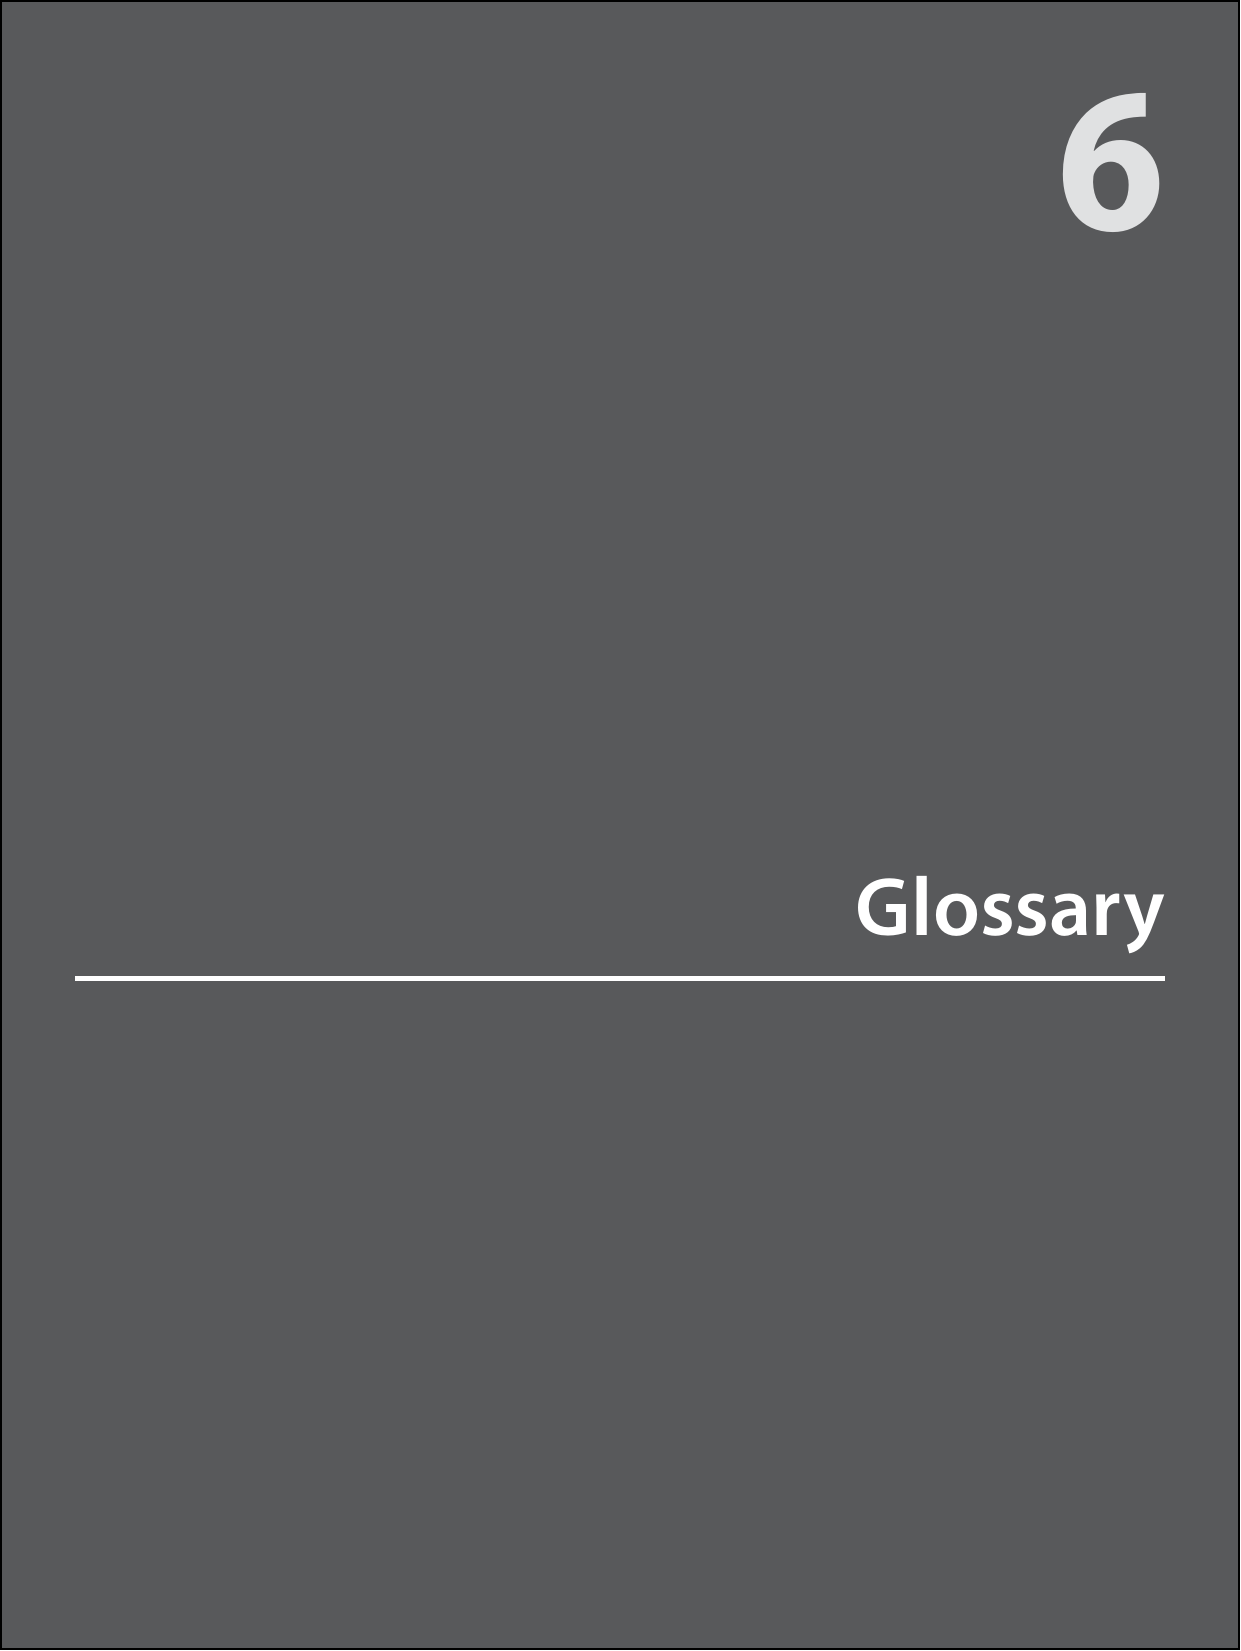 Glossary6